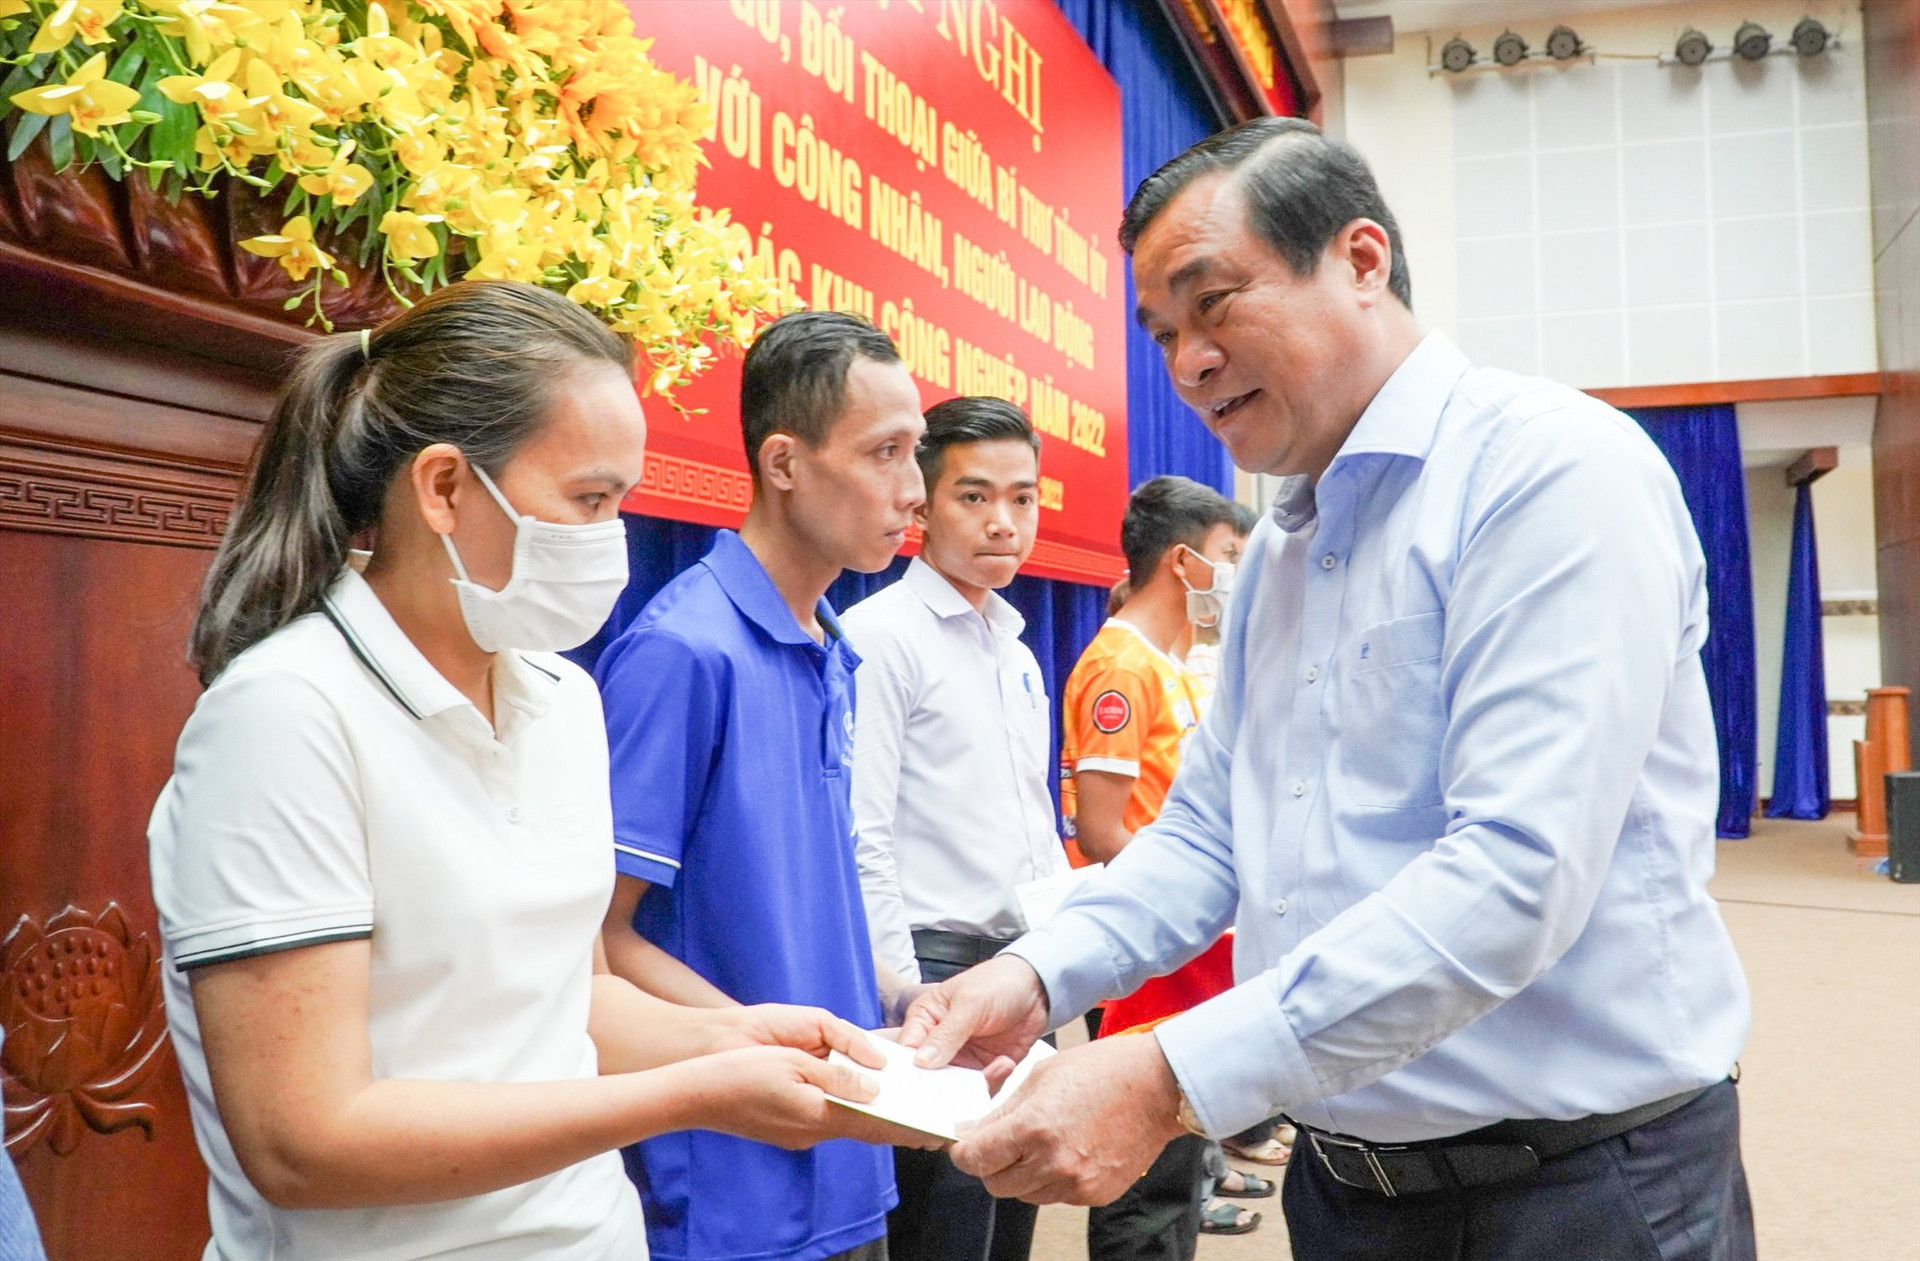 Tại buổi đối thoại, Bí thư Tỉnh ủy Phan Việt Cường đã tặng 40 suất quà cho công nhân lao động có hoàn cảnh khó khăn trên địa bàn tỉnh. Mỗi suất quà trị giá 1 triệu đồng, nhằm động viên, chia sẻ khó khăn với người lao động.